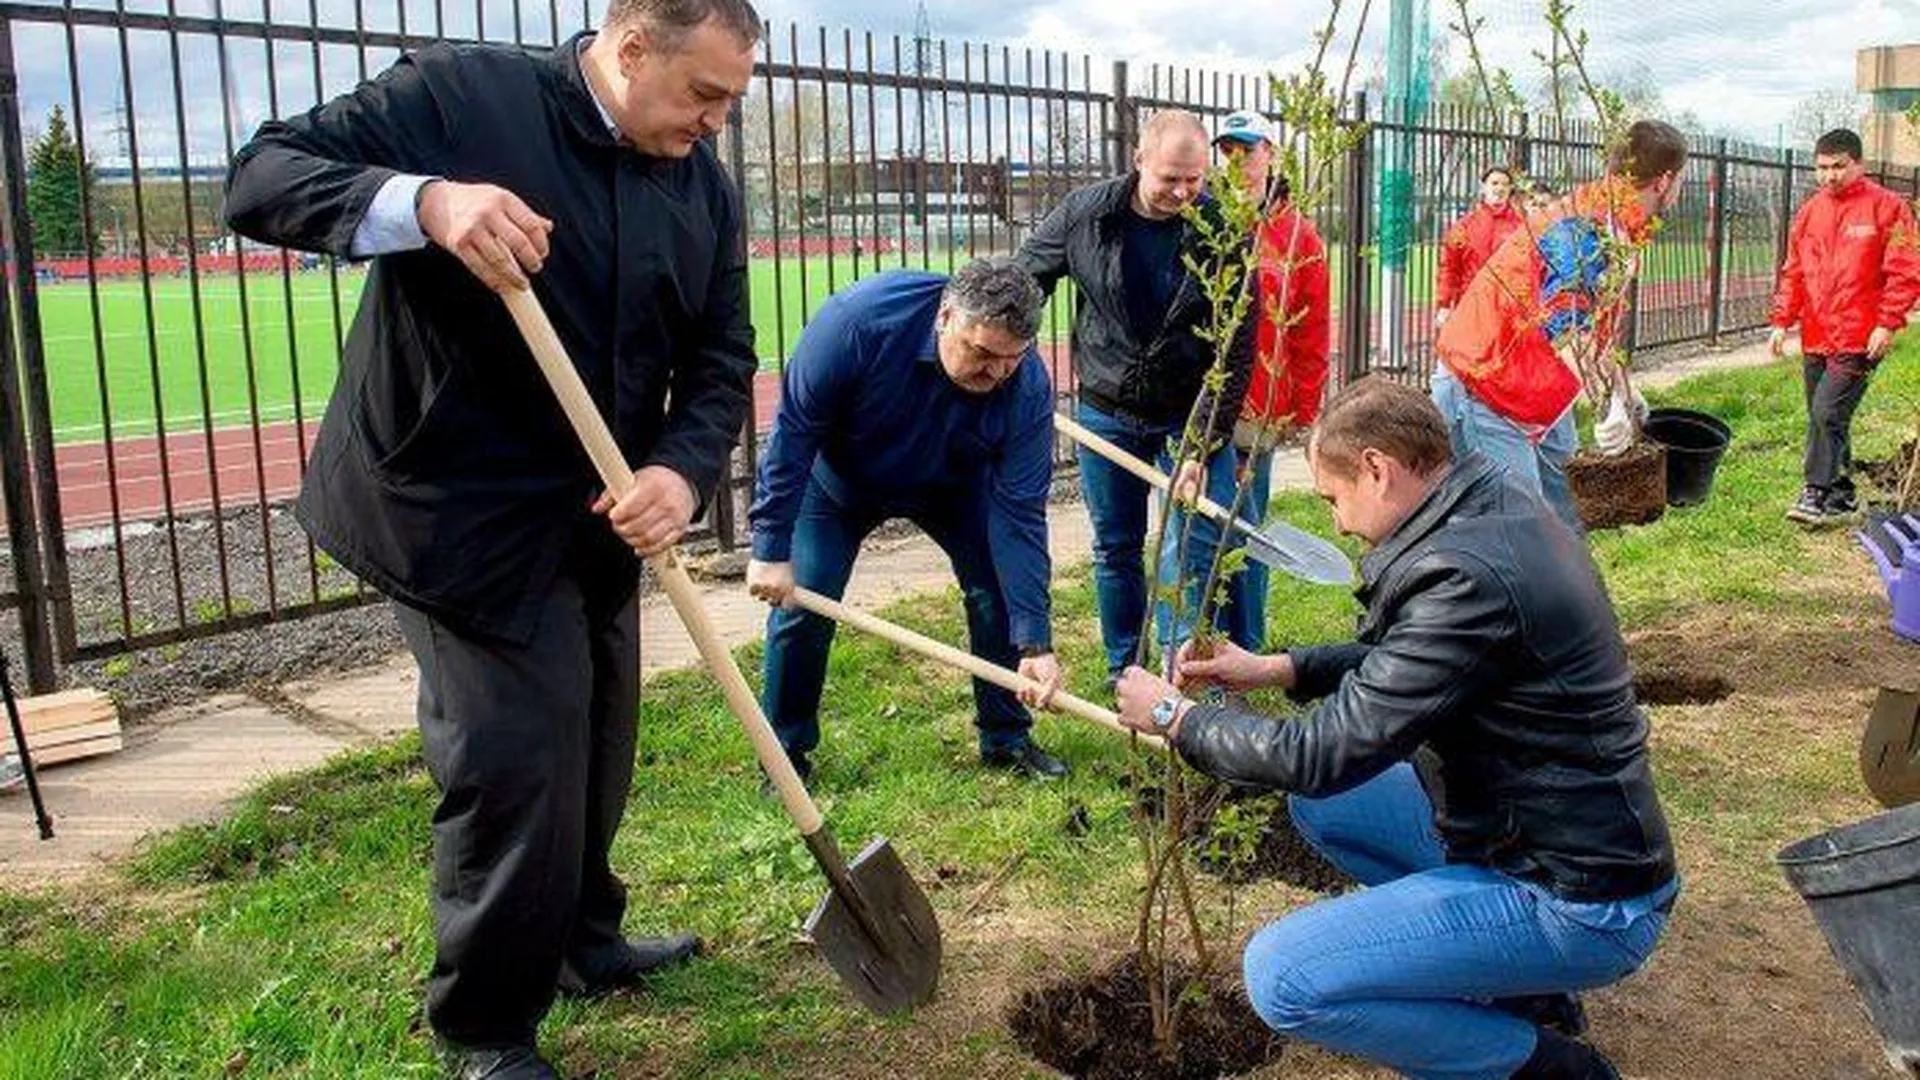 20 кустов сирени высадили рядом с обновленным стадионом «Весна» в Подольске